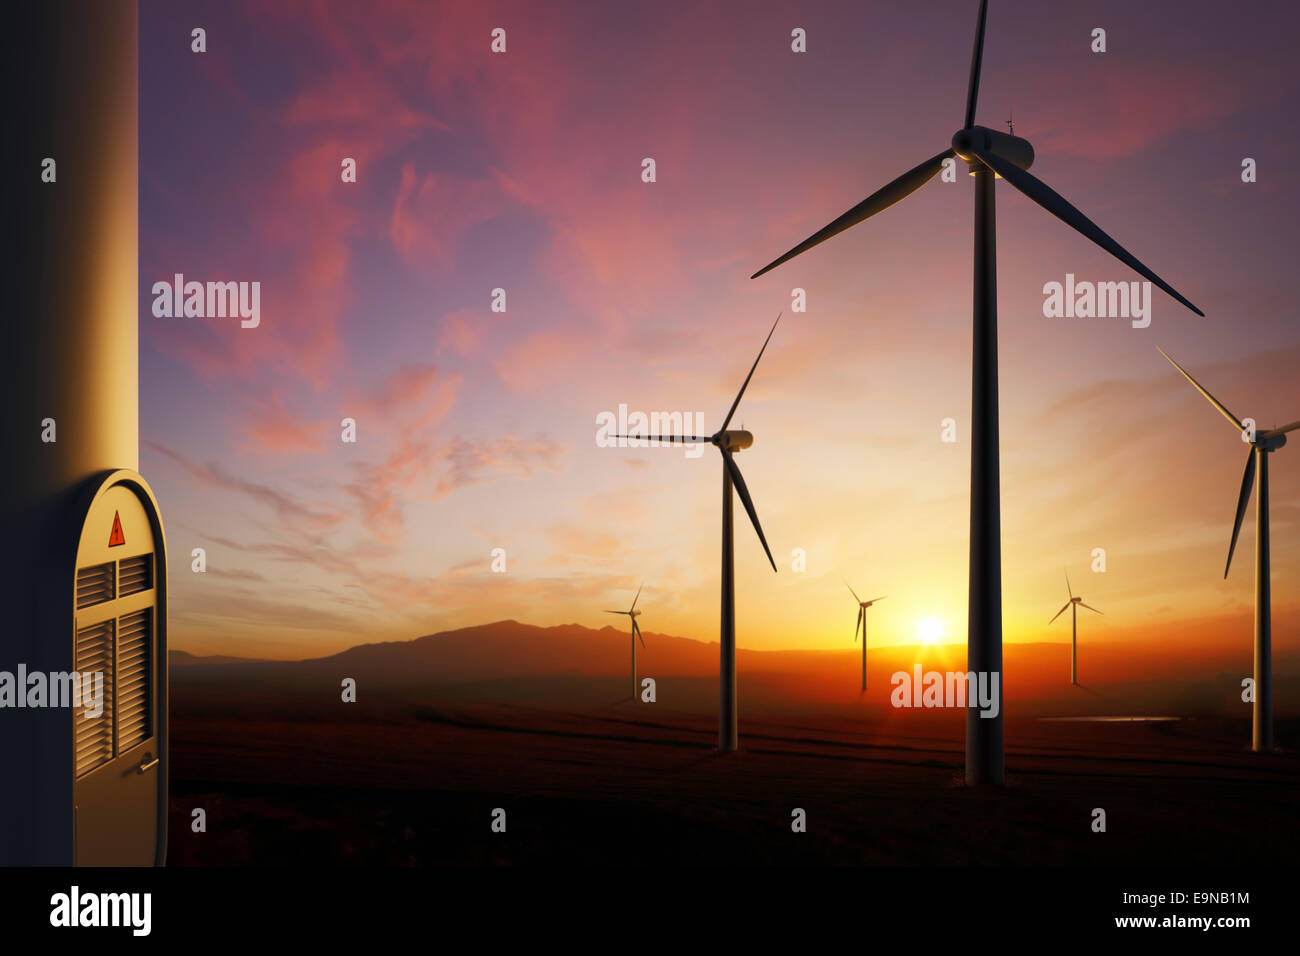 Ferme éolienne avec moody coucher du soleil (l'accent sur l'éolienne la plus proche sur la droite) - illustrations en 3D Banque D'Images